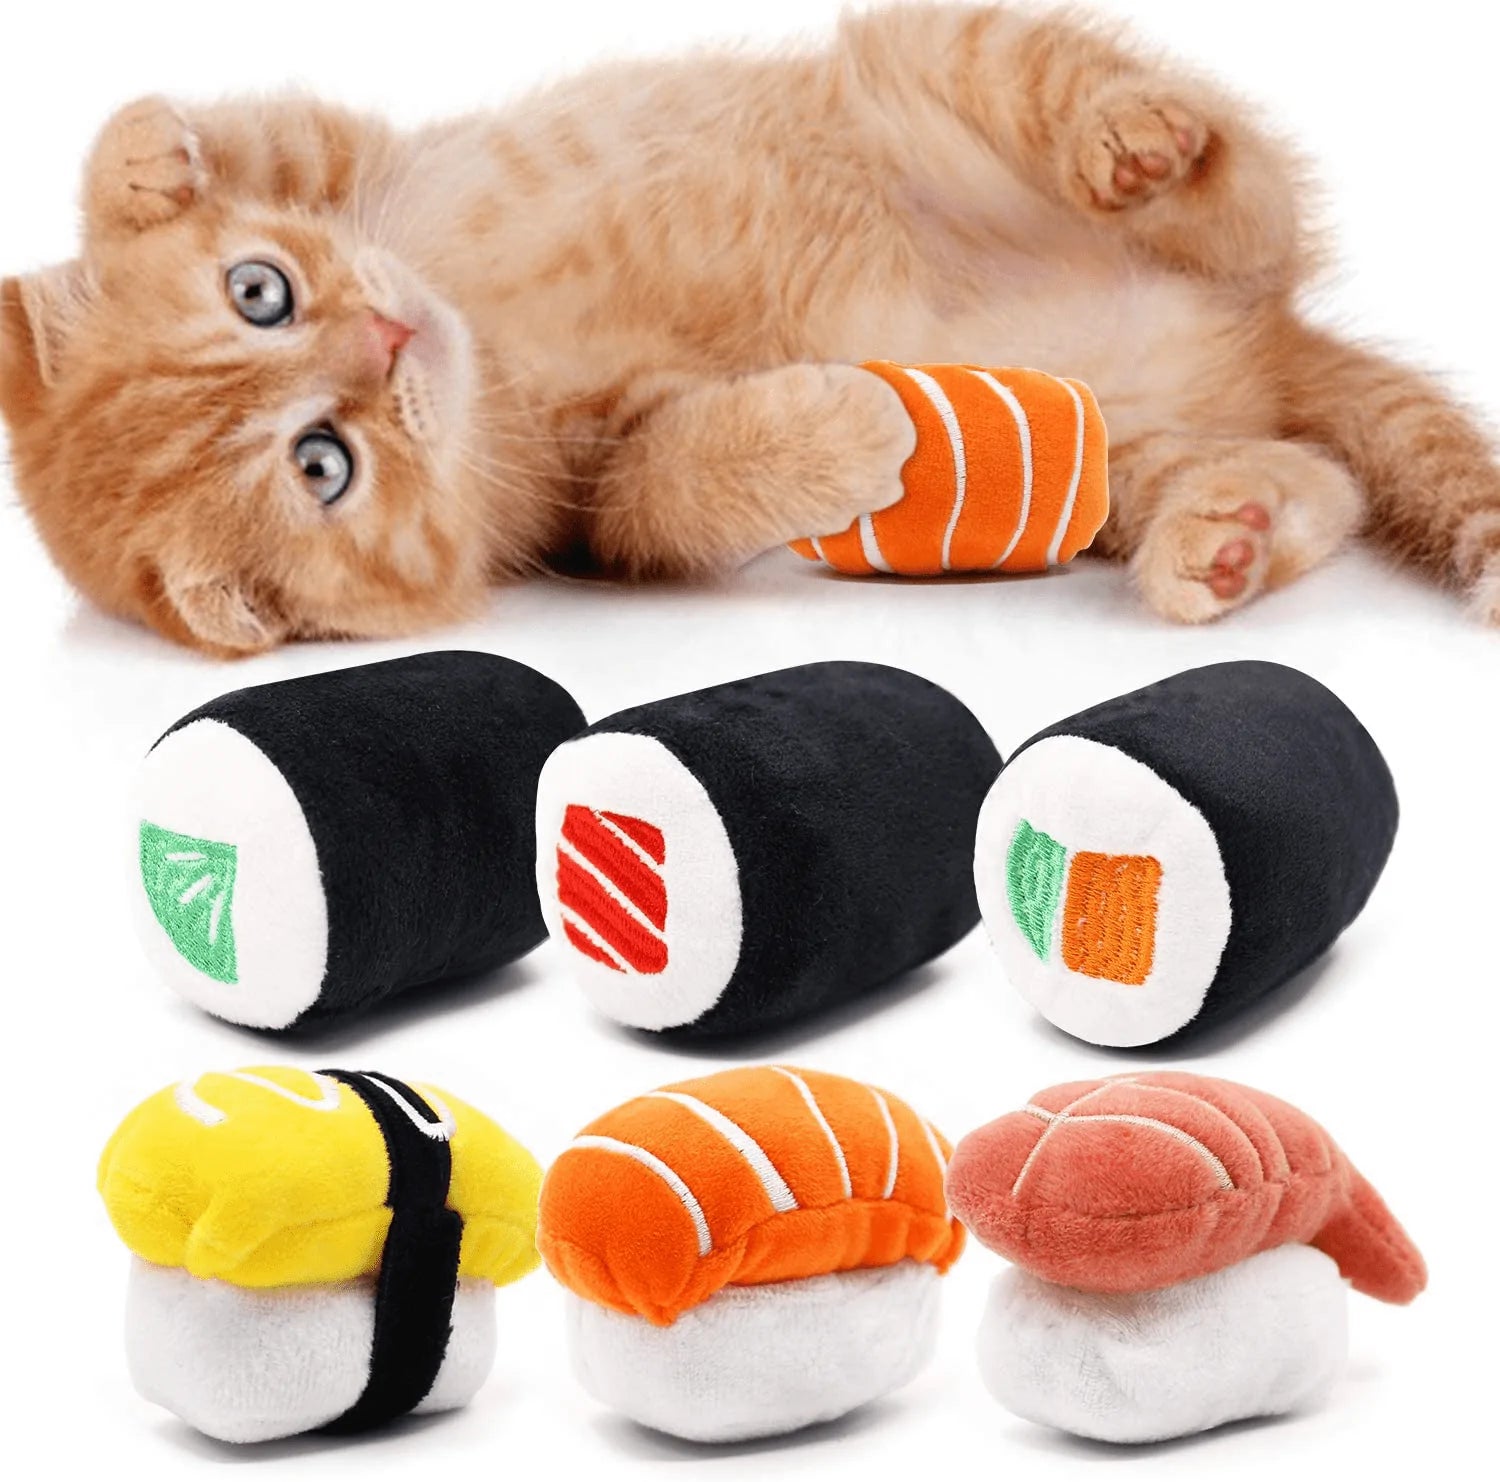 Ciyvolyeen Lot de 6 jouets pour chat Sushi avec herbe à chat